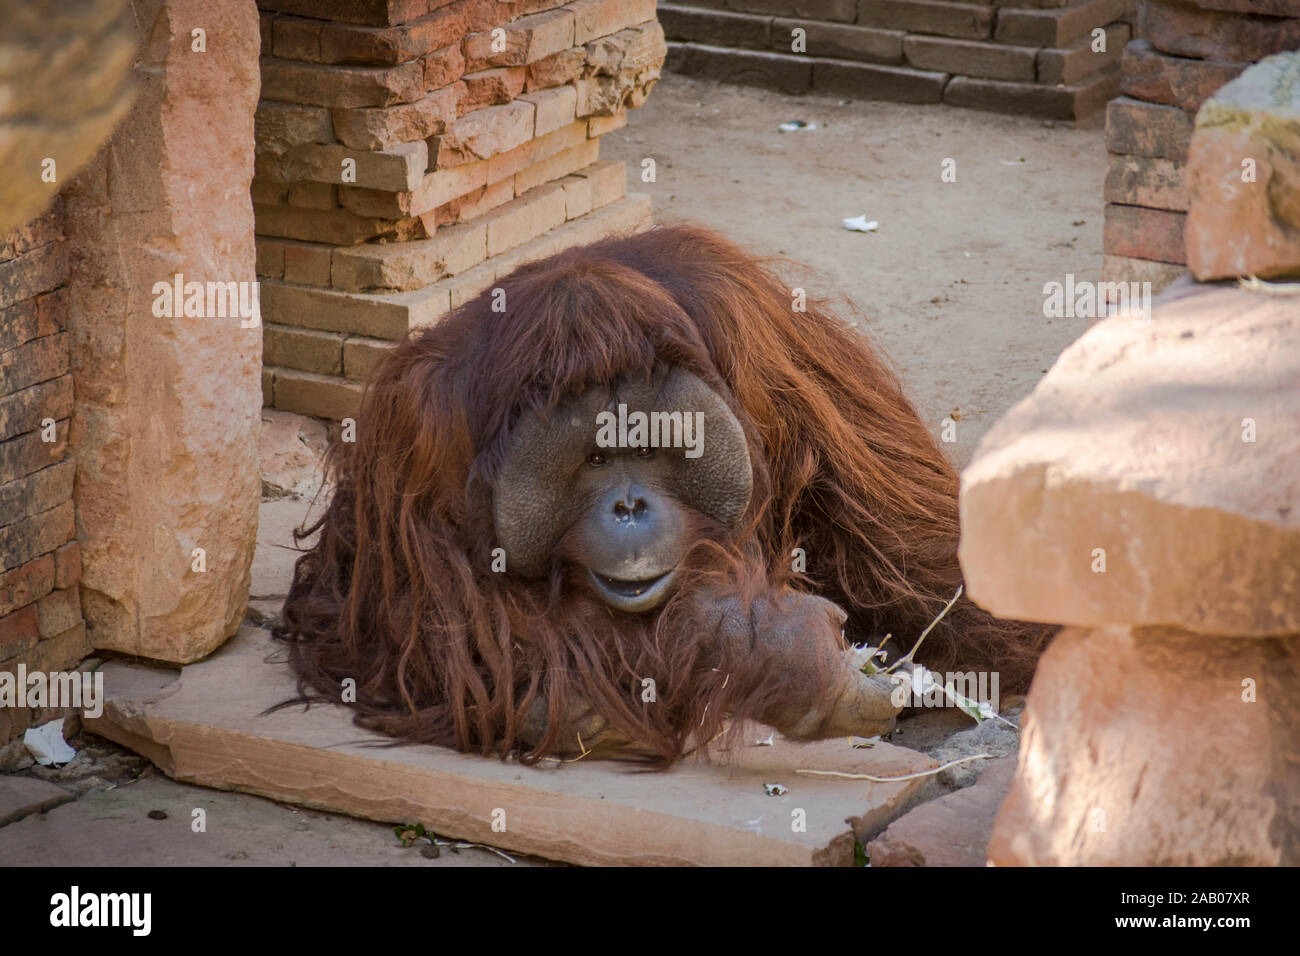 Bornean orangutan, Pongo pygmaeus in enclosure, orangutans, Zoo Bioparc Fuengirola, Spain. Stock Photo